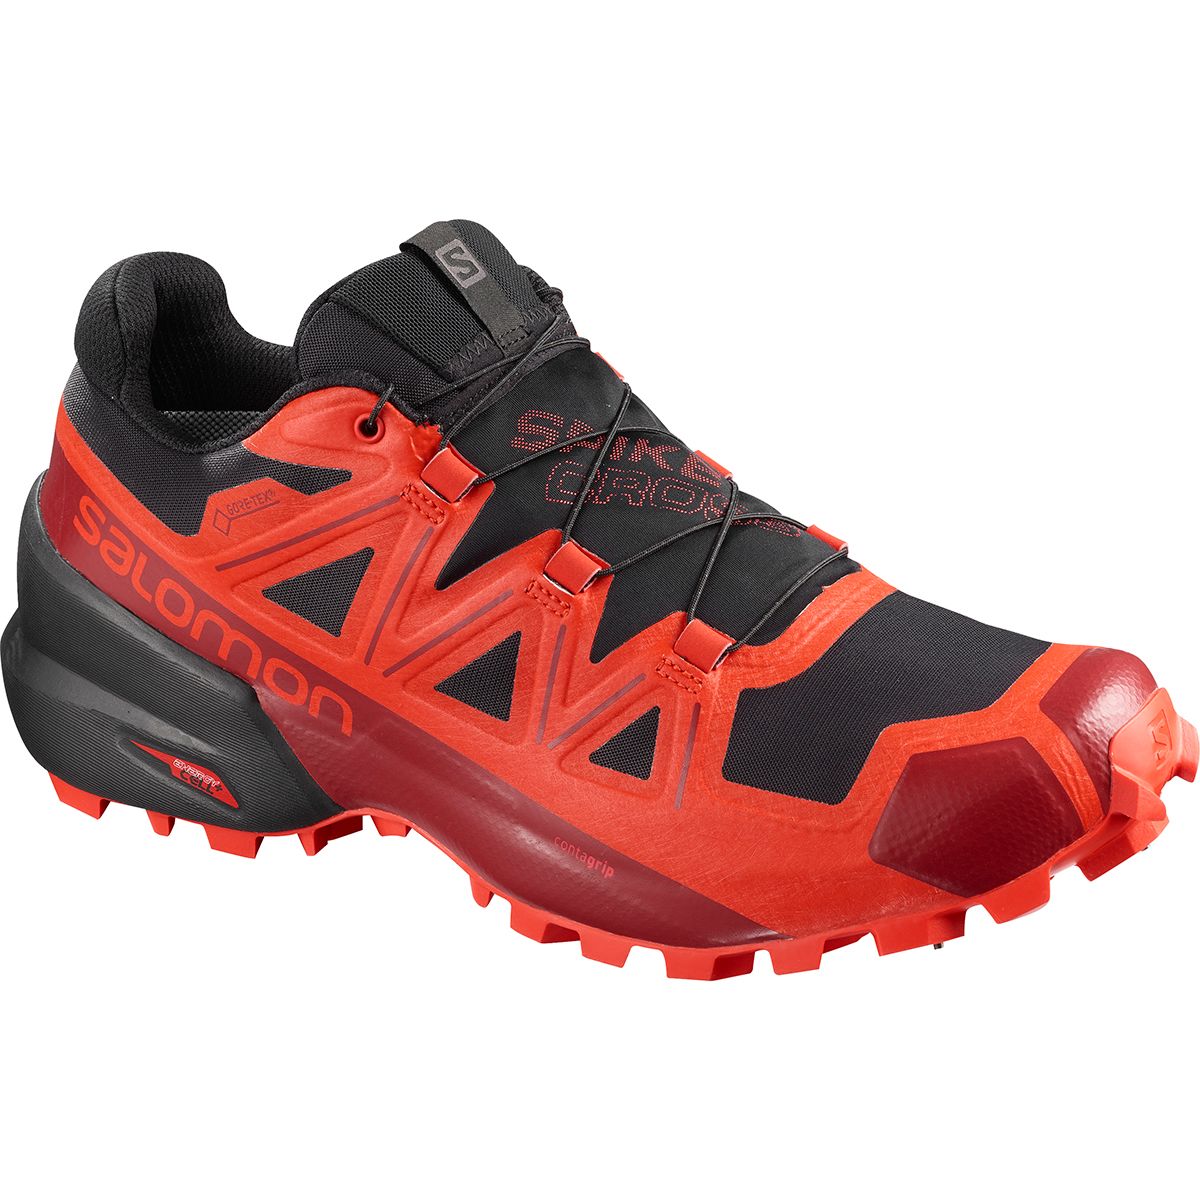 Salomon Spikecross 5 GTX Trail Running Shoe - Men's